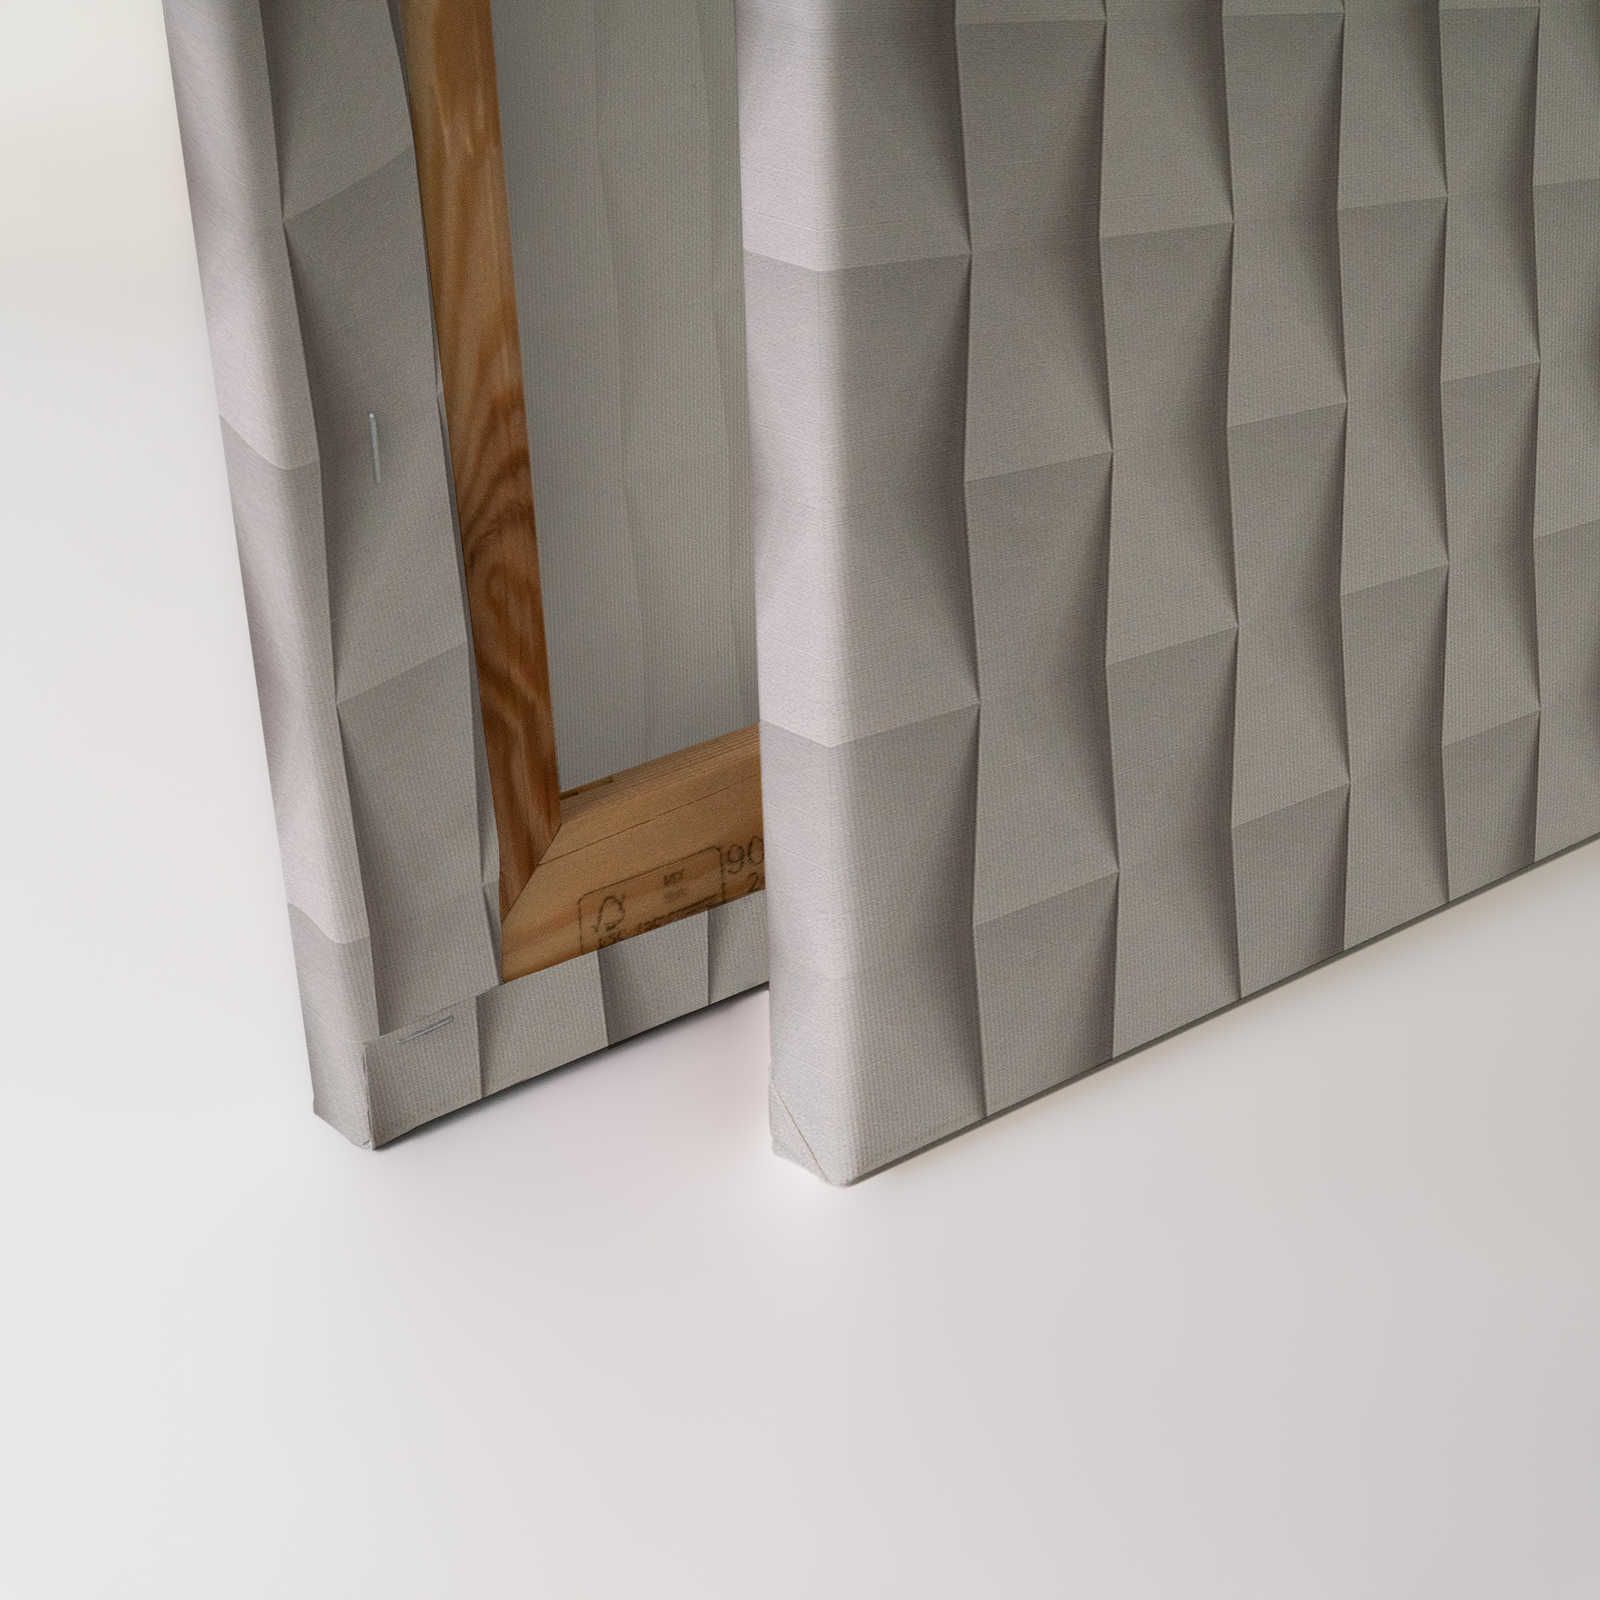             Casa di carta 2 - Pittura su tela 3D Disegno di carta pieghevole con ombre - 0,90 m x 0,60 m
        